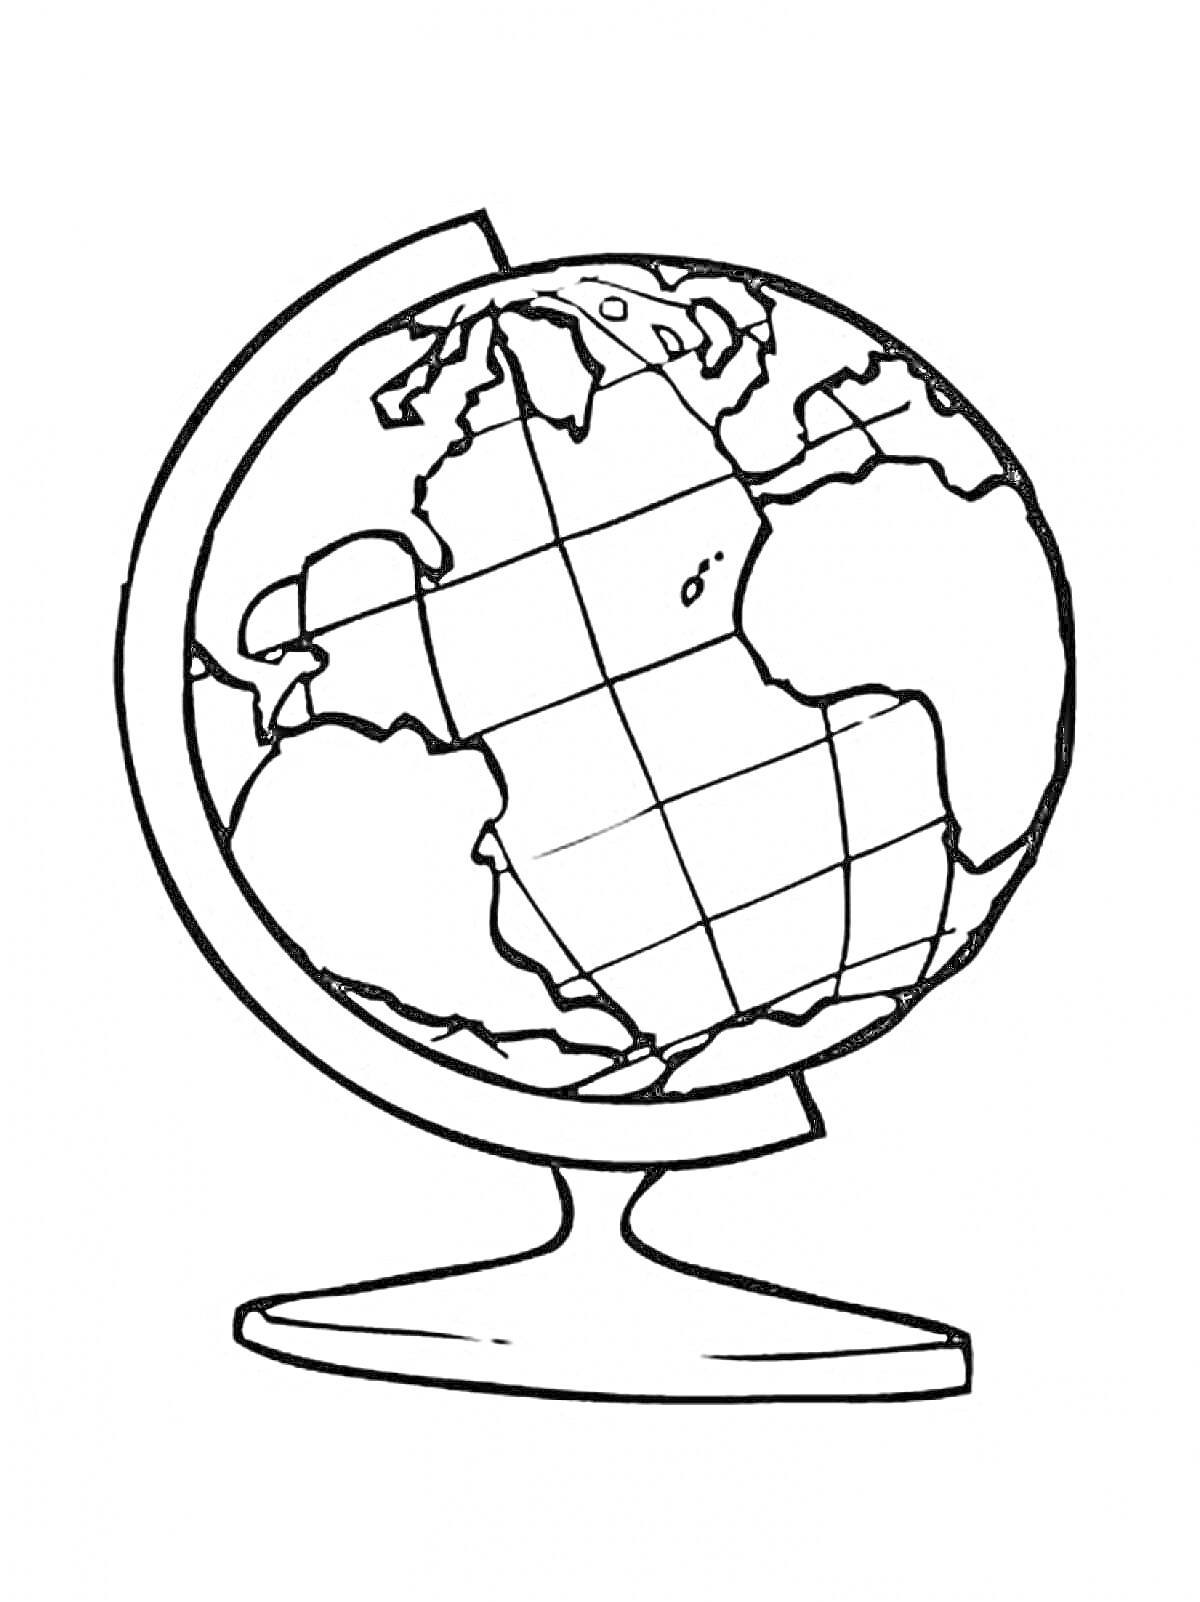 Раскраска Глобус на подставке с континентами и меридианами